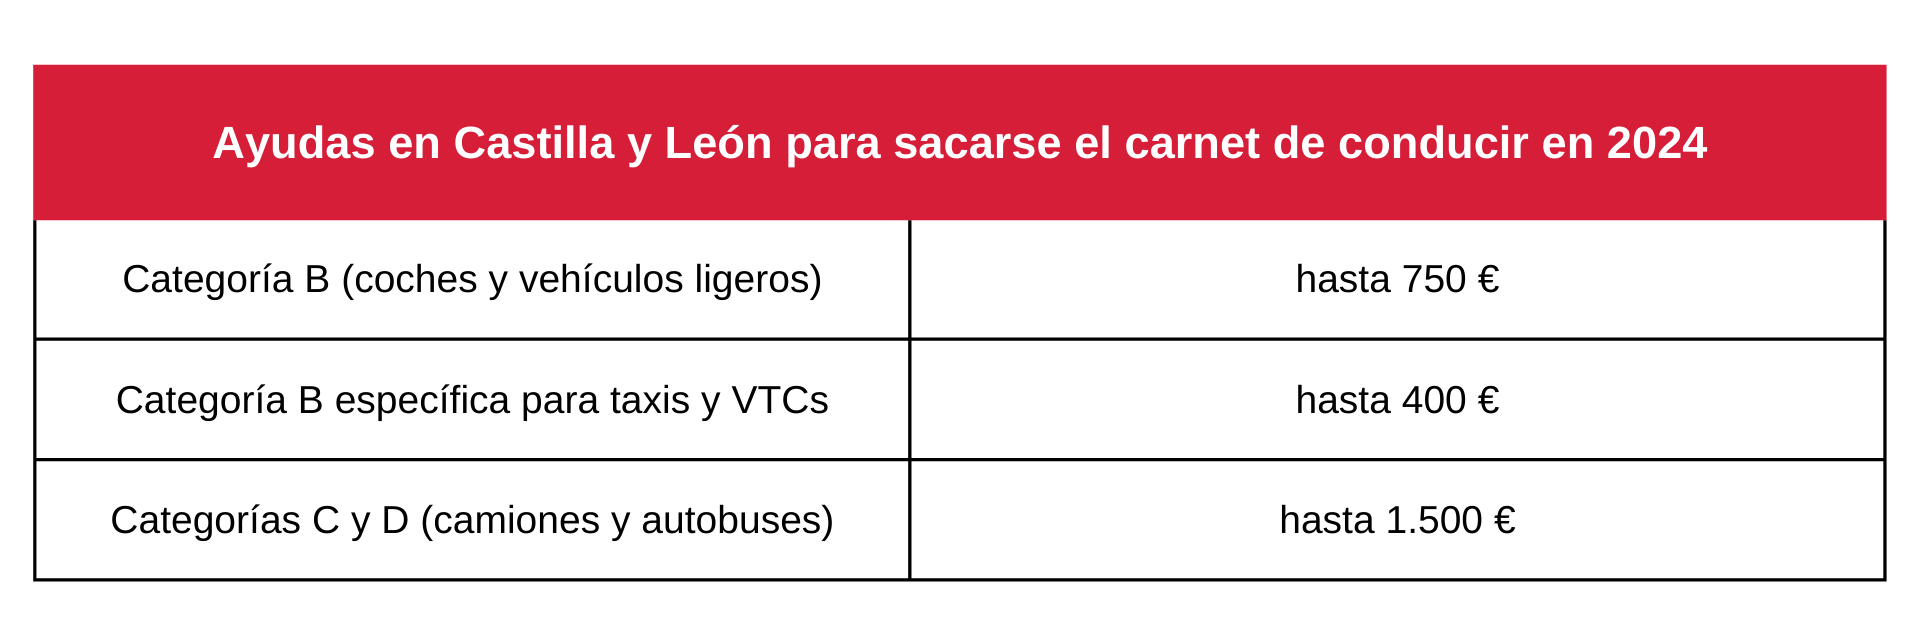 Tabla sobre ayudas en Castilla y León para sacarse el carnet de conducir en 2024